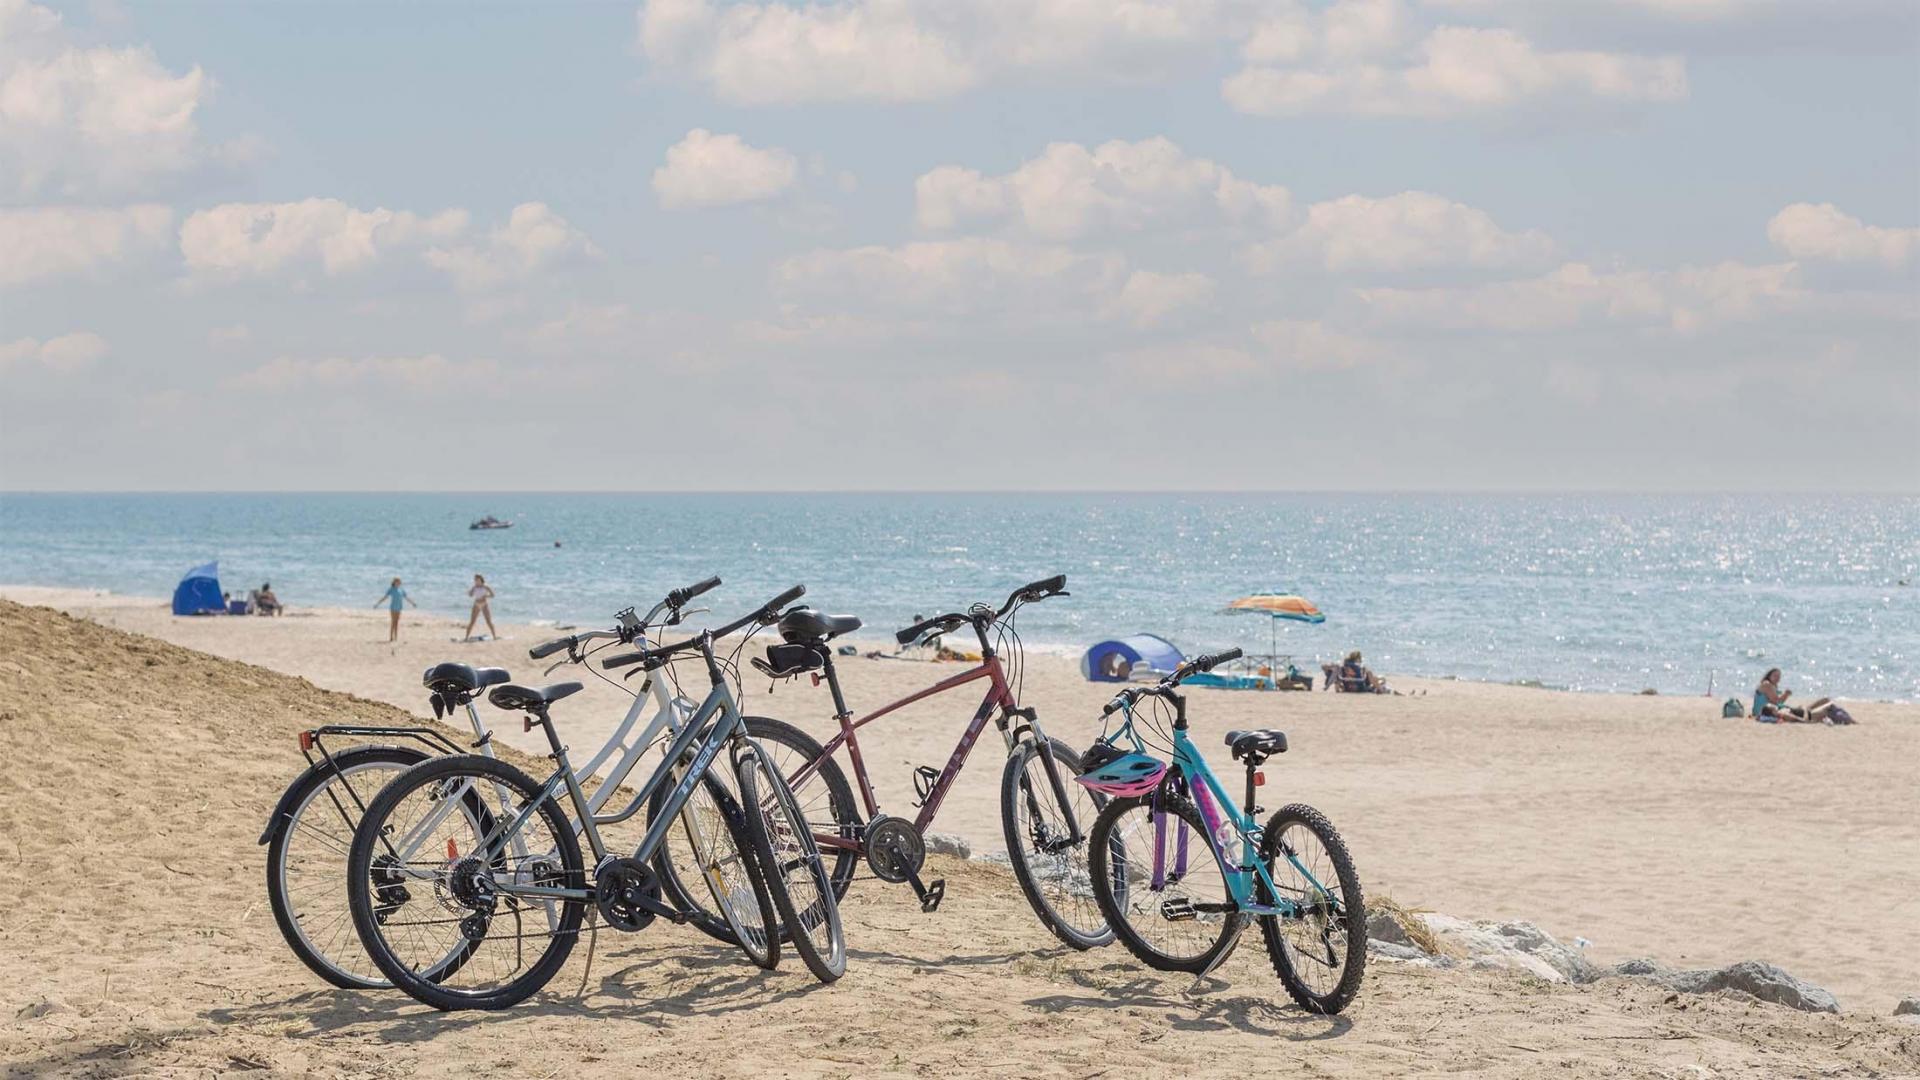 Bikes parked near the beach.